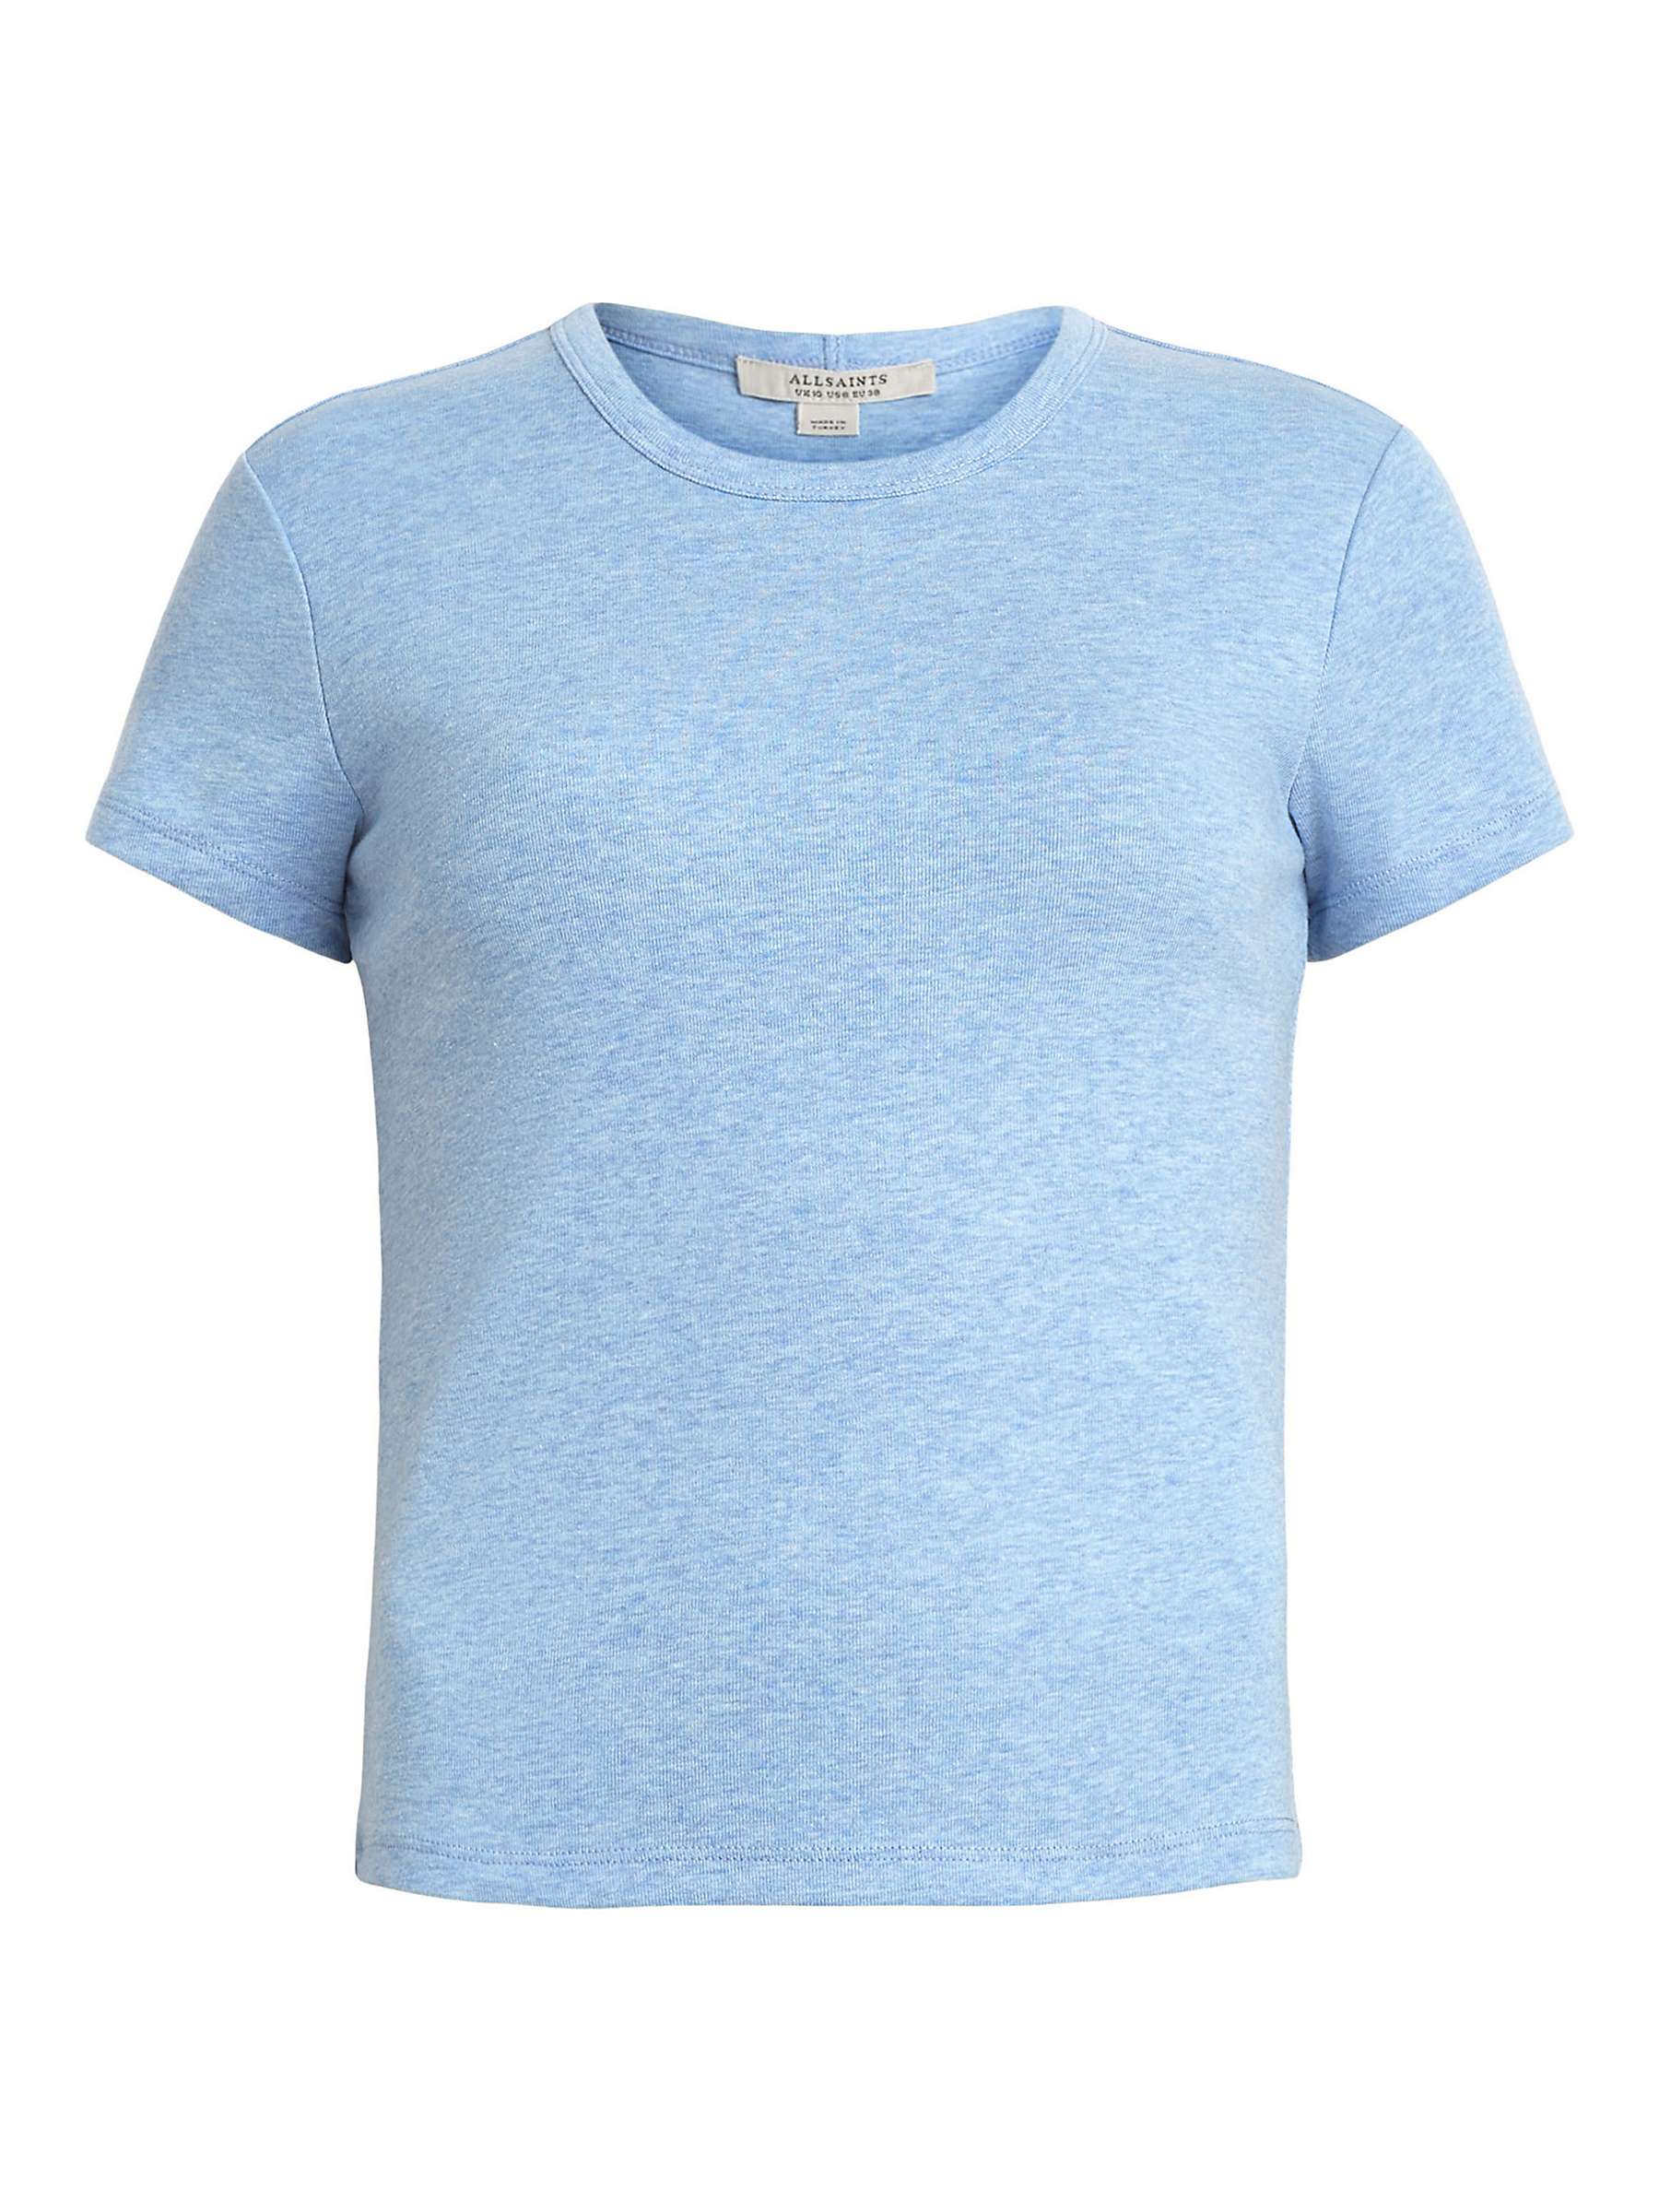 Buy AllSaints Stevie Organic Cotton T-Shirt Online at johnlewis.com